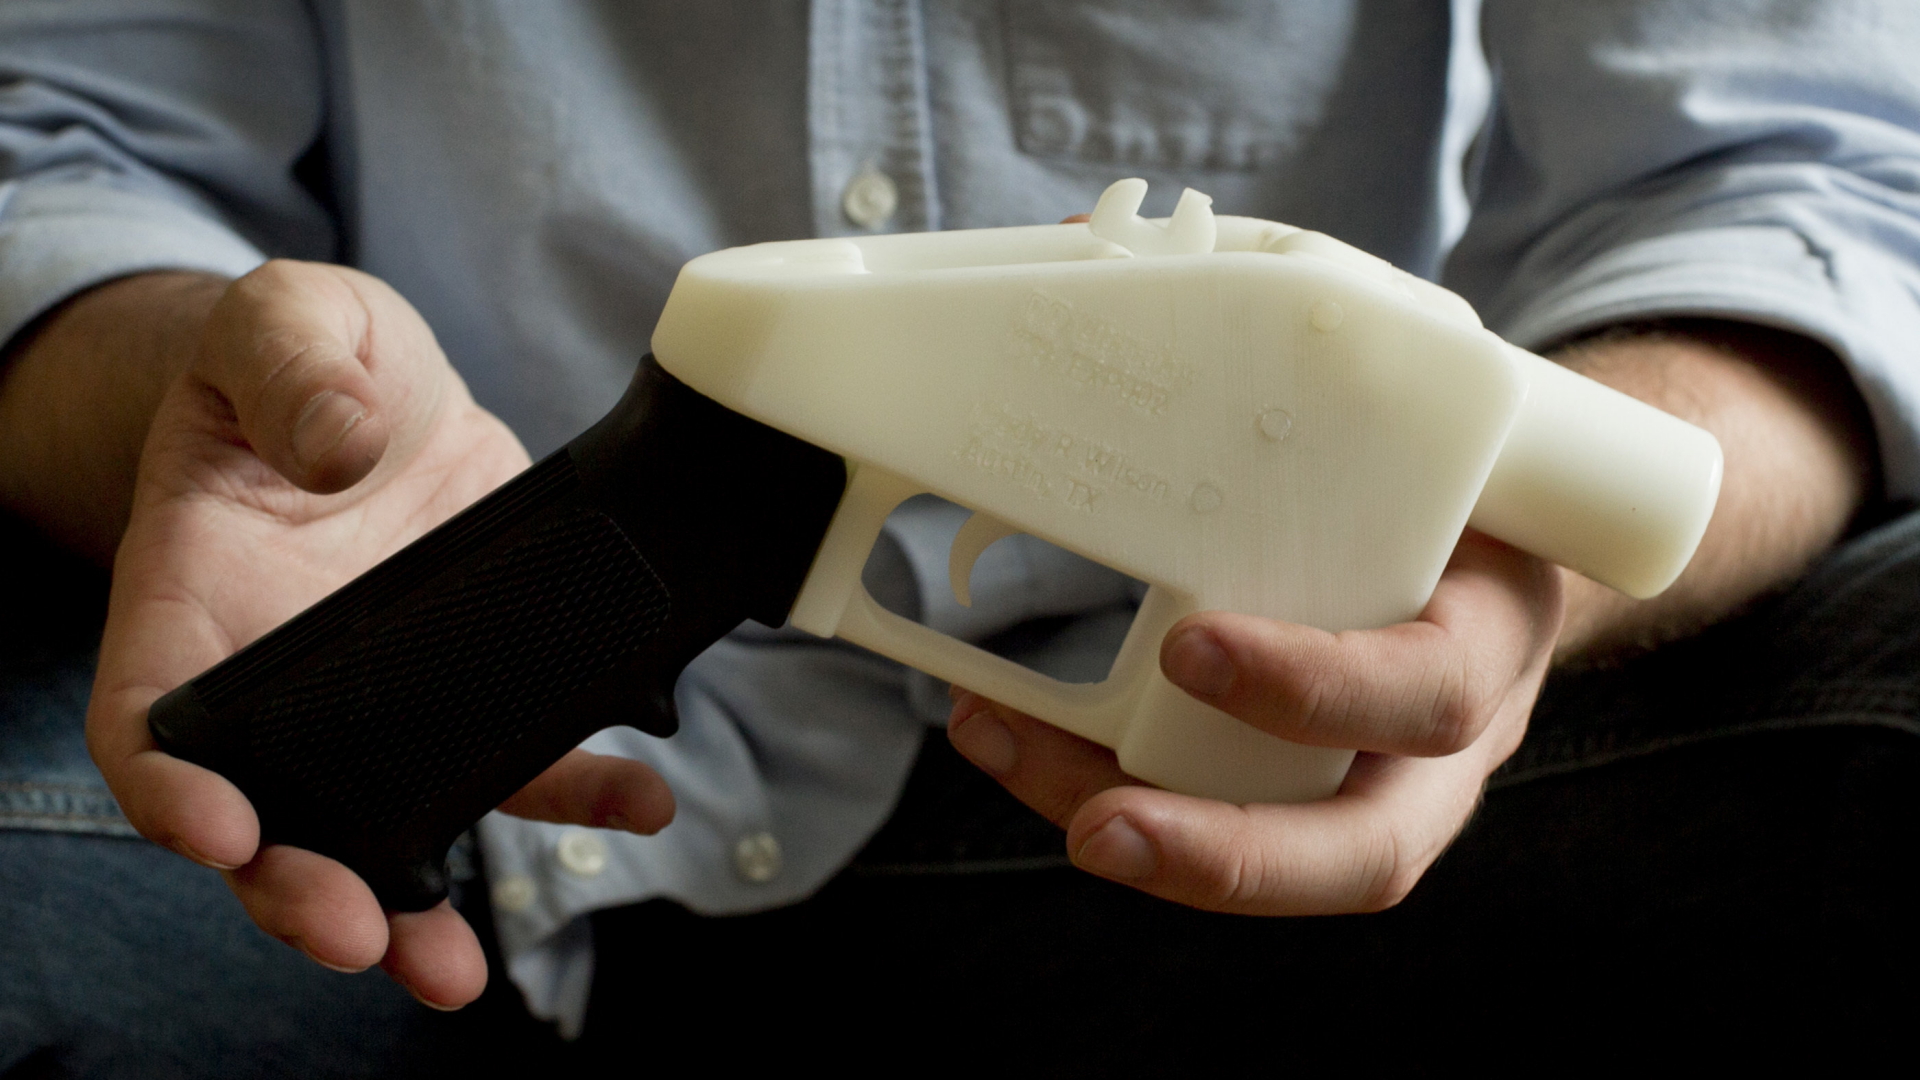 Ein Mann hält eine Waffe in der Hand, die per 3D-Druck entstanden ist. | Bildquelle: AP